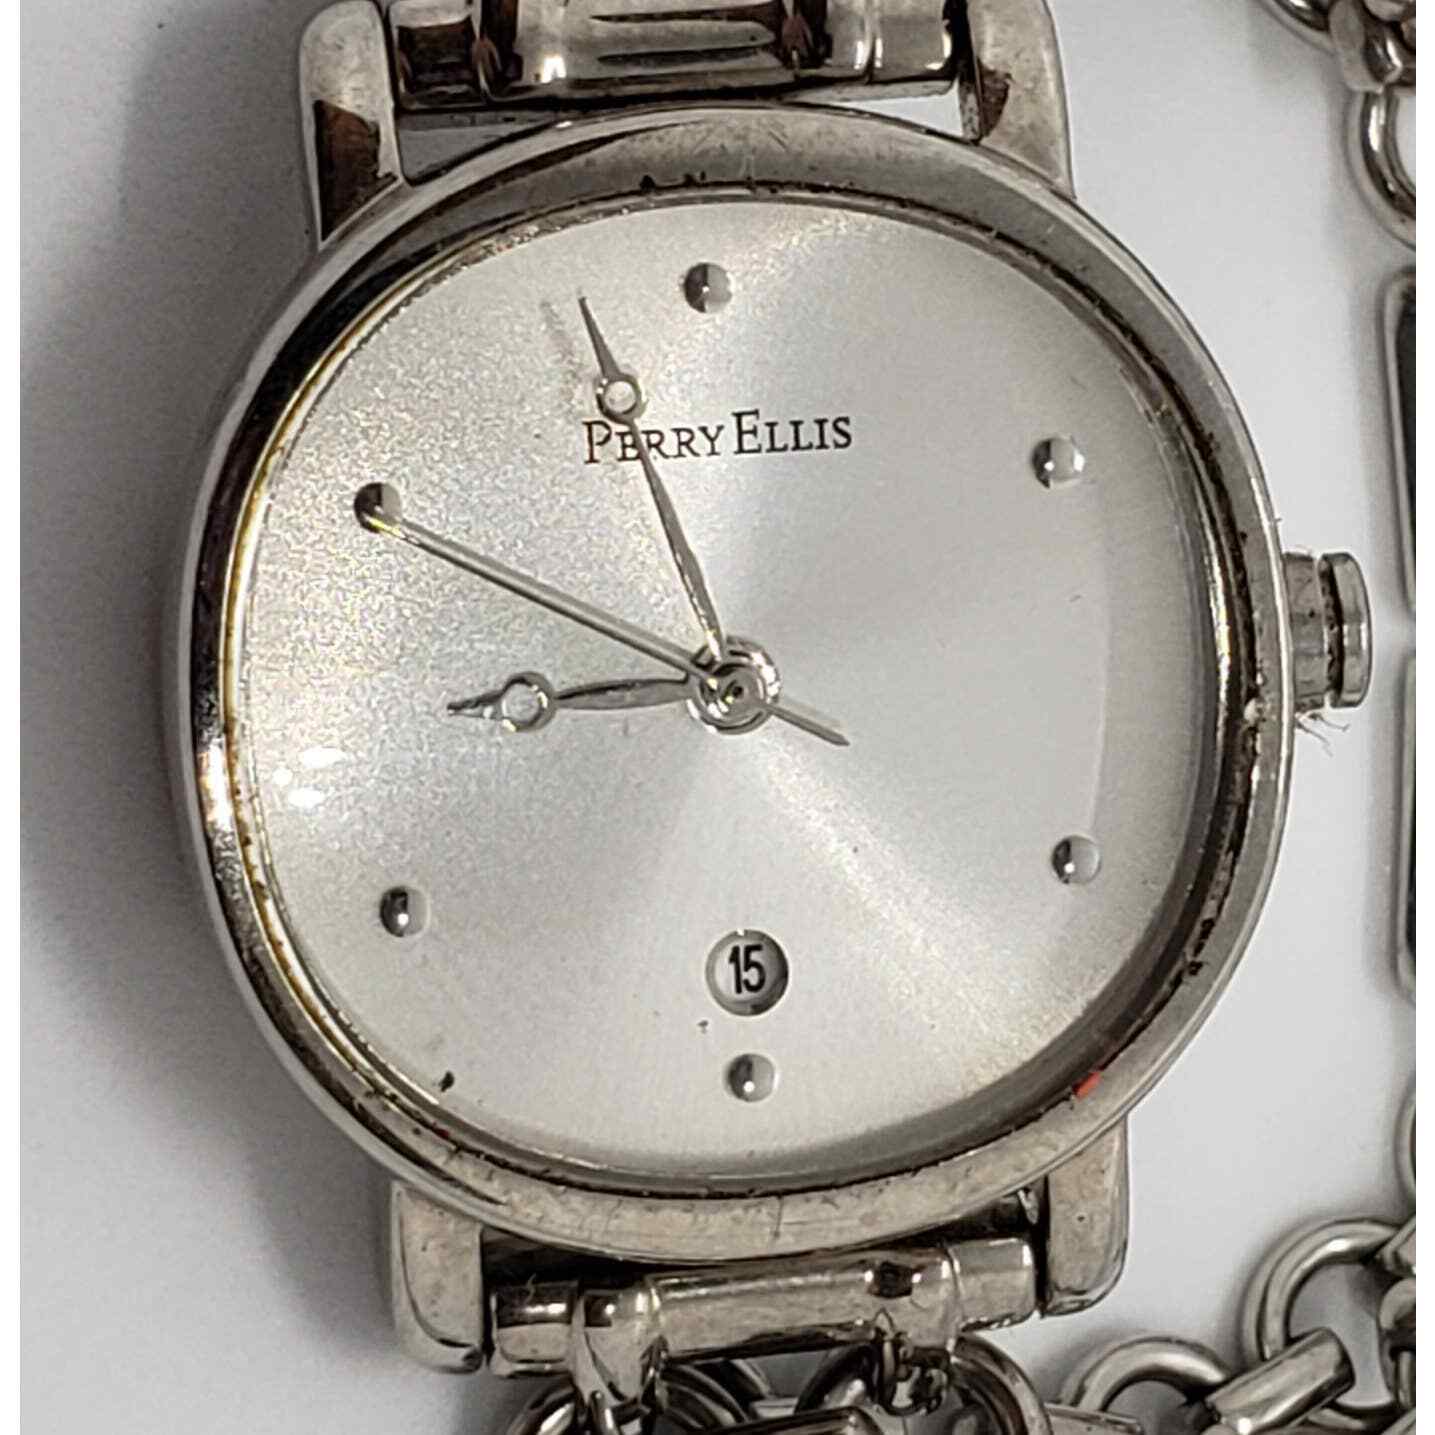 Perry Ellis women's watch. PEL0007. White iridescent face. Calendar date on face